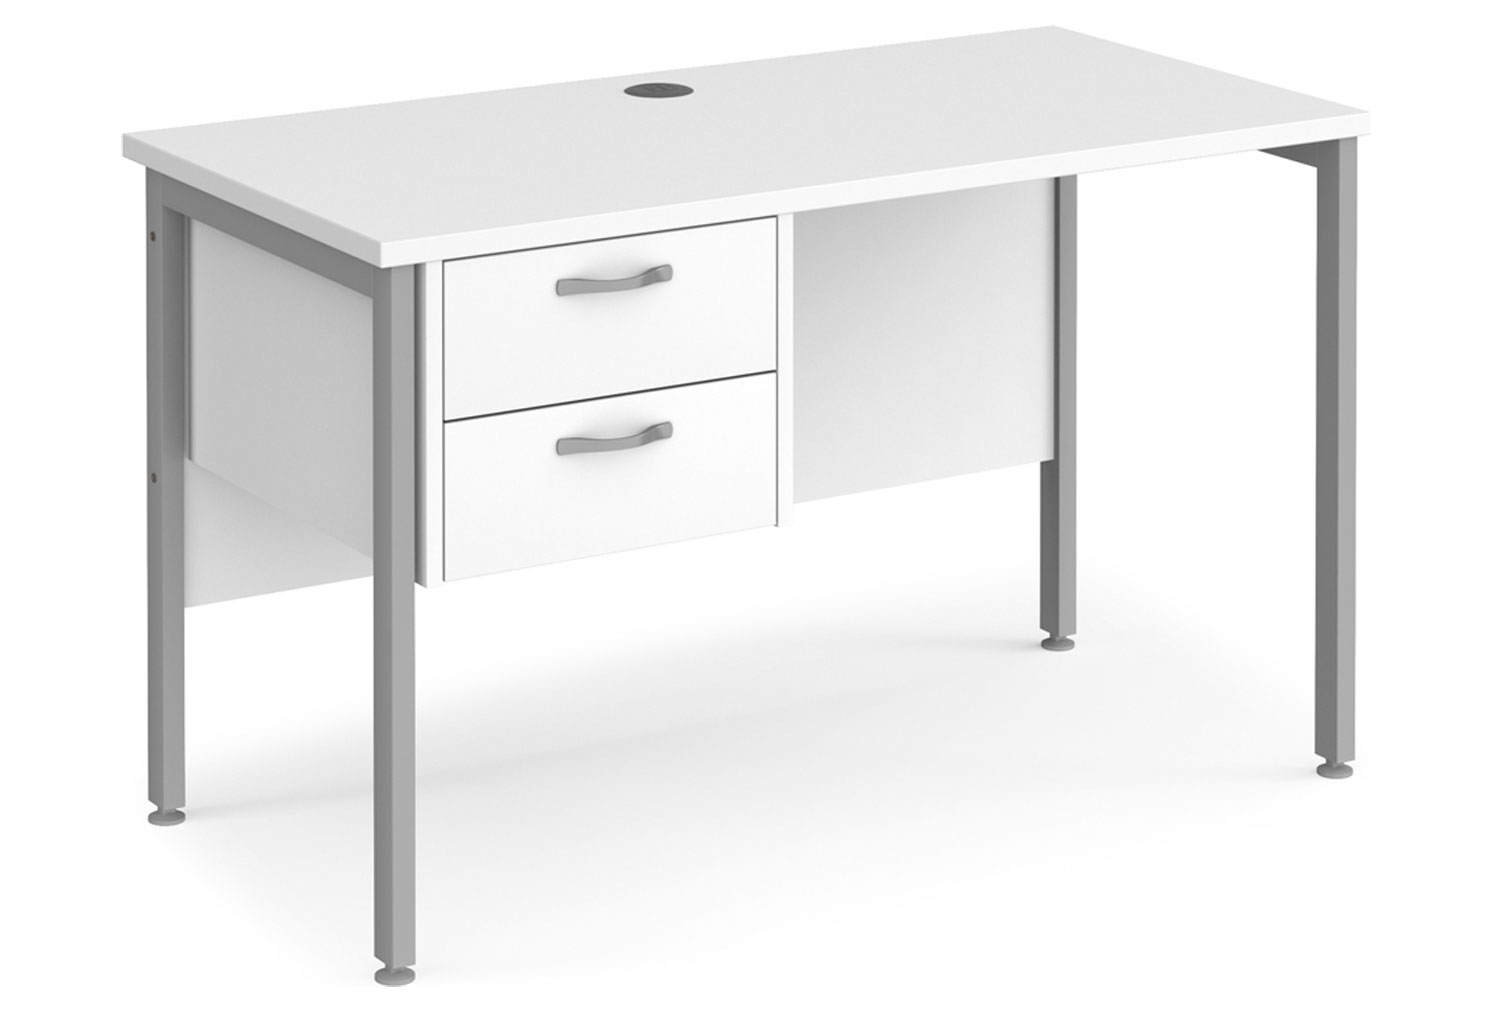 Value Line Deluxe H-Leg Narrow Rectangular Office Desk 2 Drawers (Silver Legs), 120w60dx73h (cm), White, Fully Installed